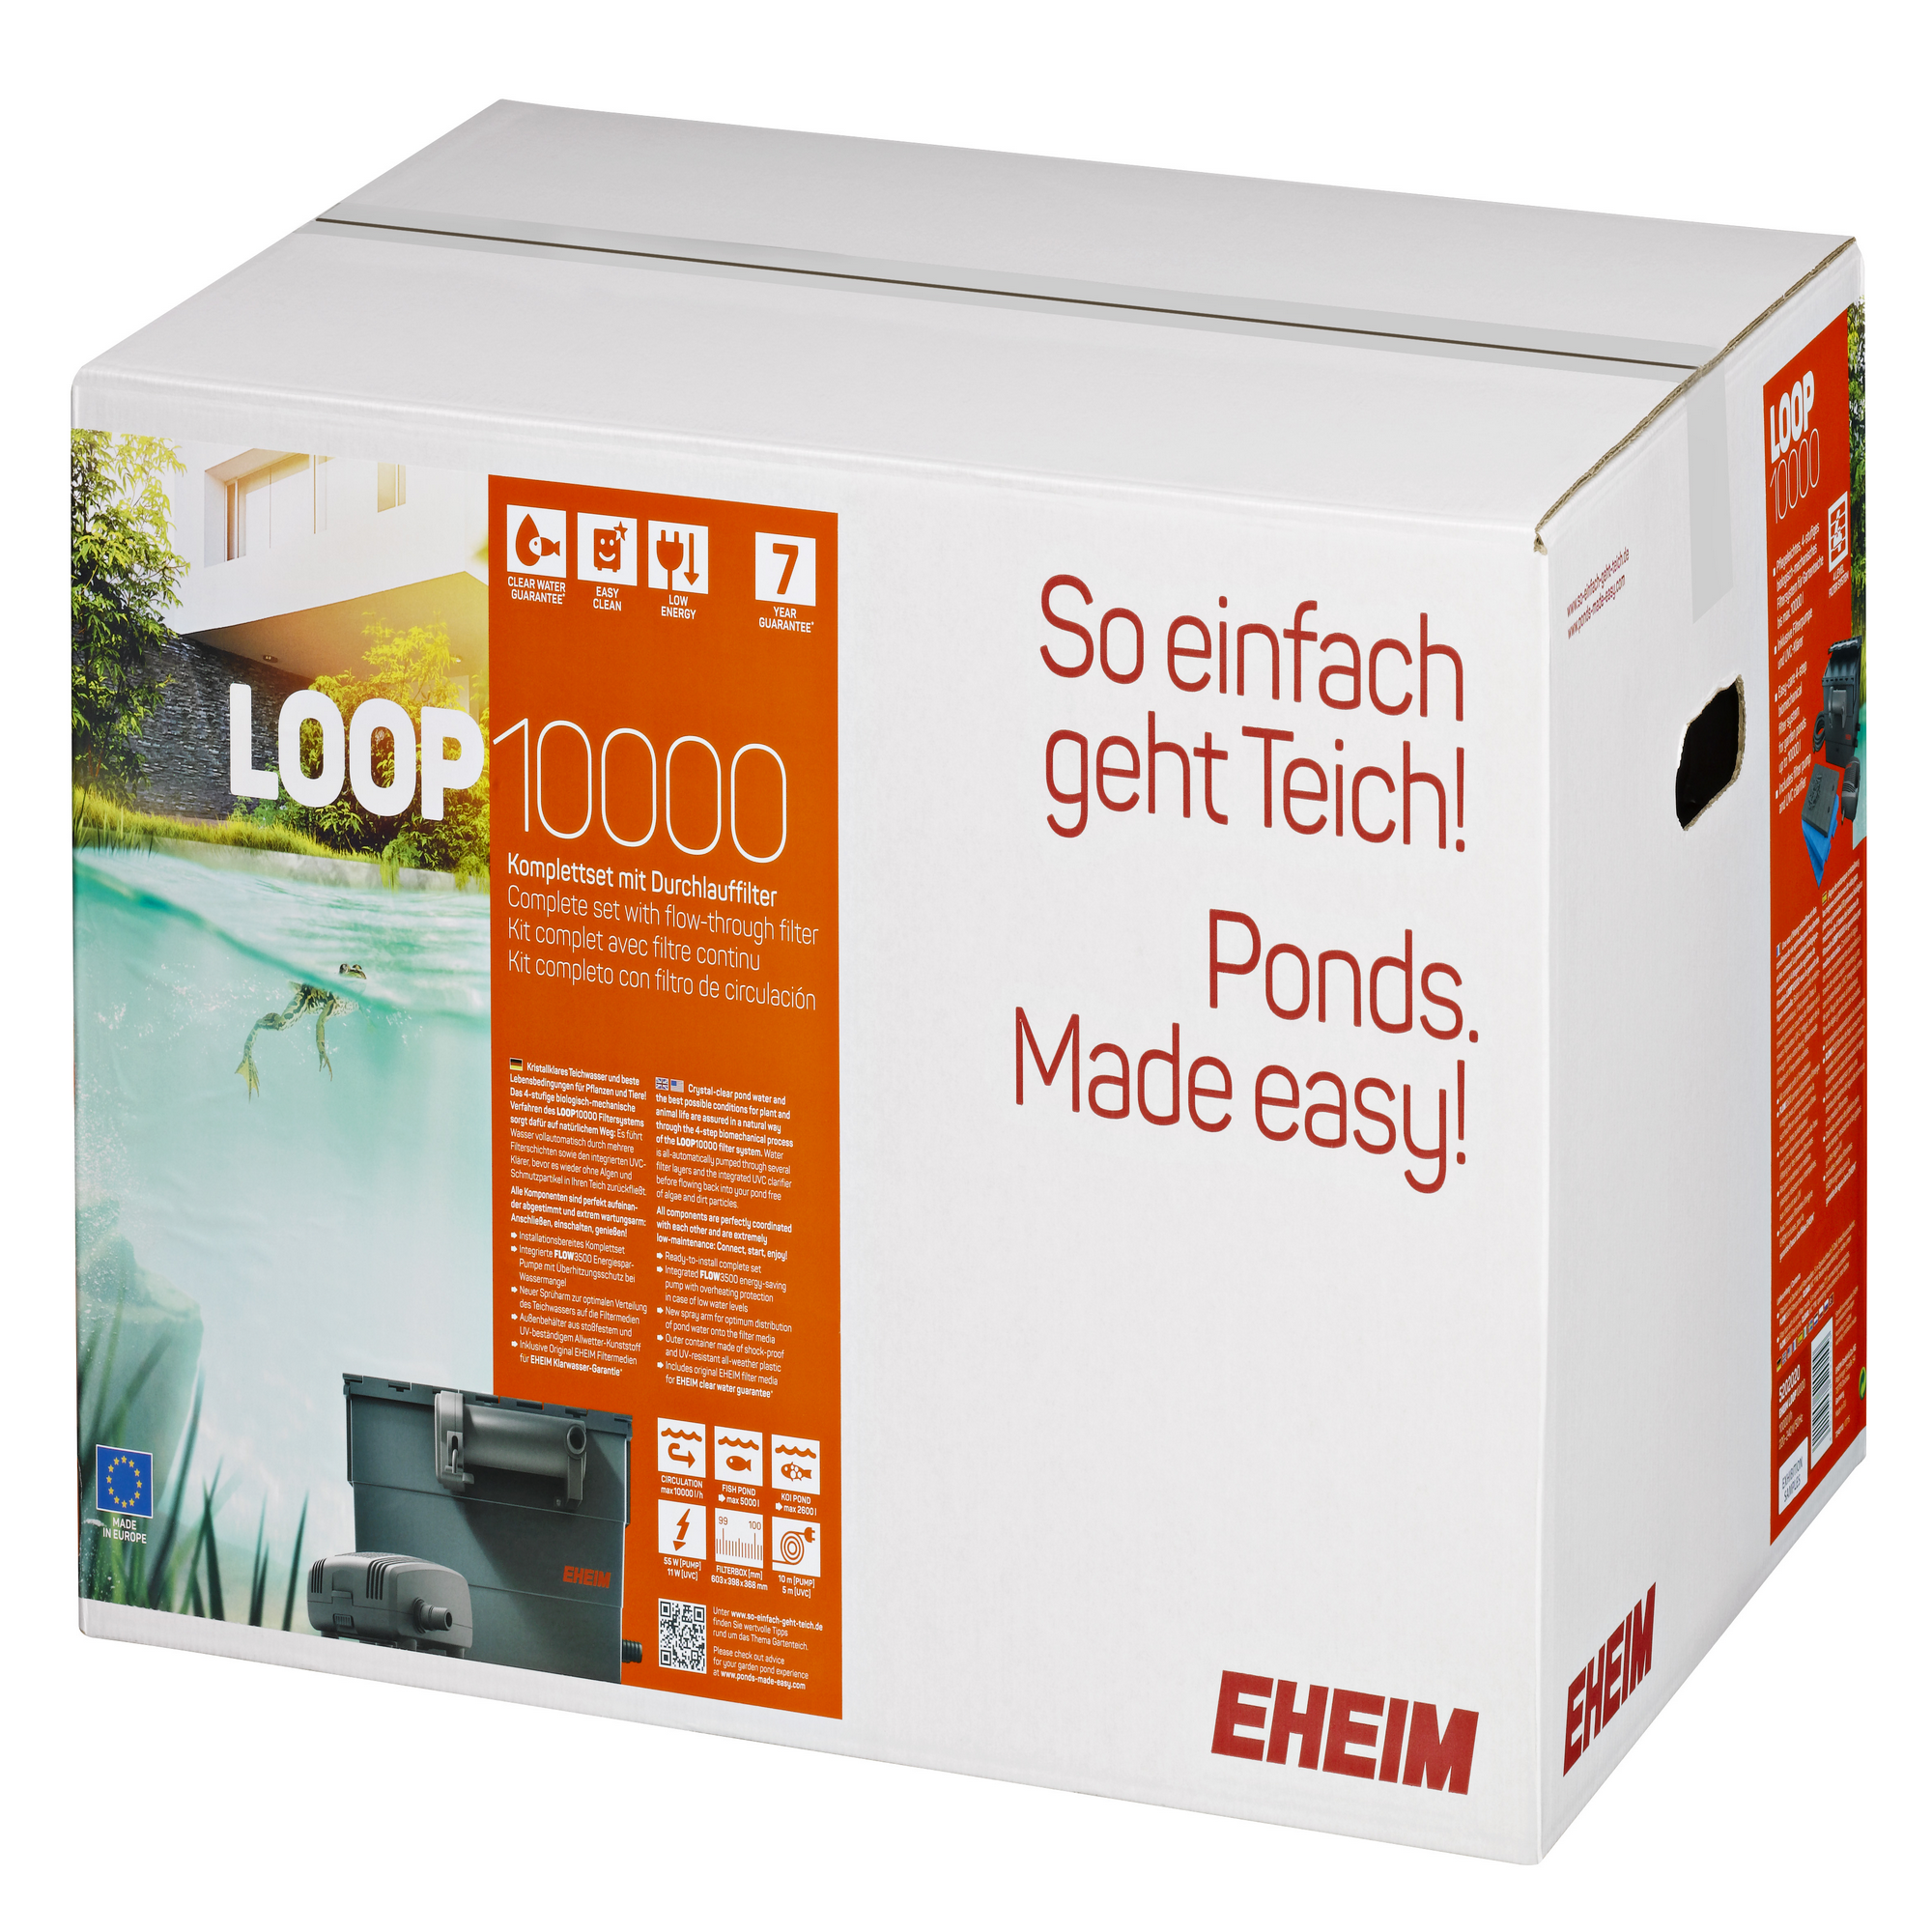 EHEIM LOOP 10000 Komplett-Set mit Durchlauffilter und UV-Klärer + product picture